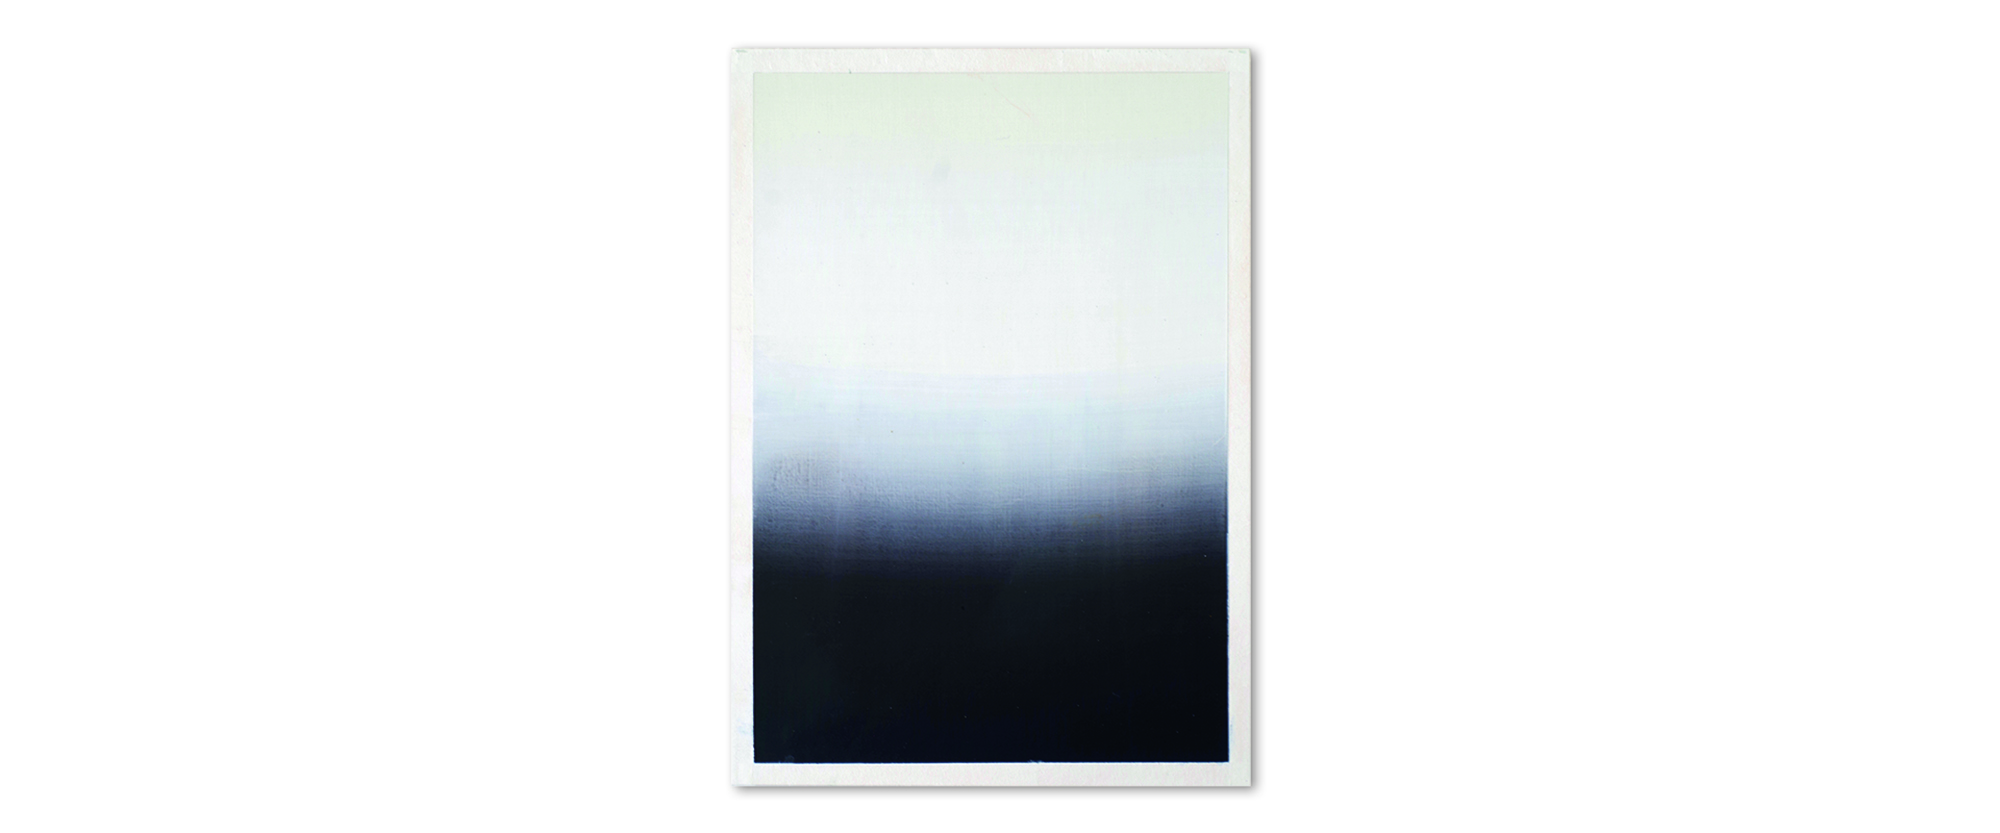 "EP - 19.1" - 2019, Pigmente, Acryl, auf Kreidegrund, auf Finnischer Maschienenholzpappe, Blattformat 30 x 21 cm, gerahmt, 50 x 40 cm